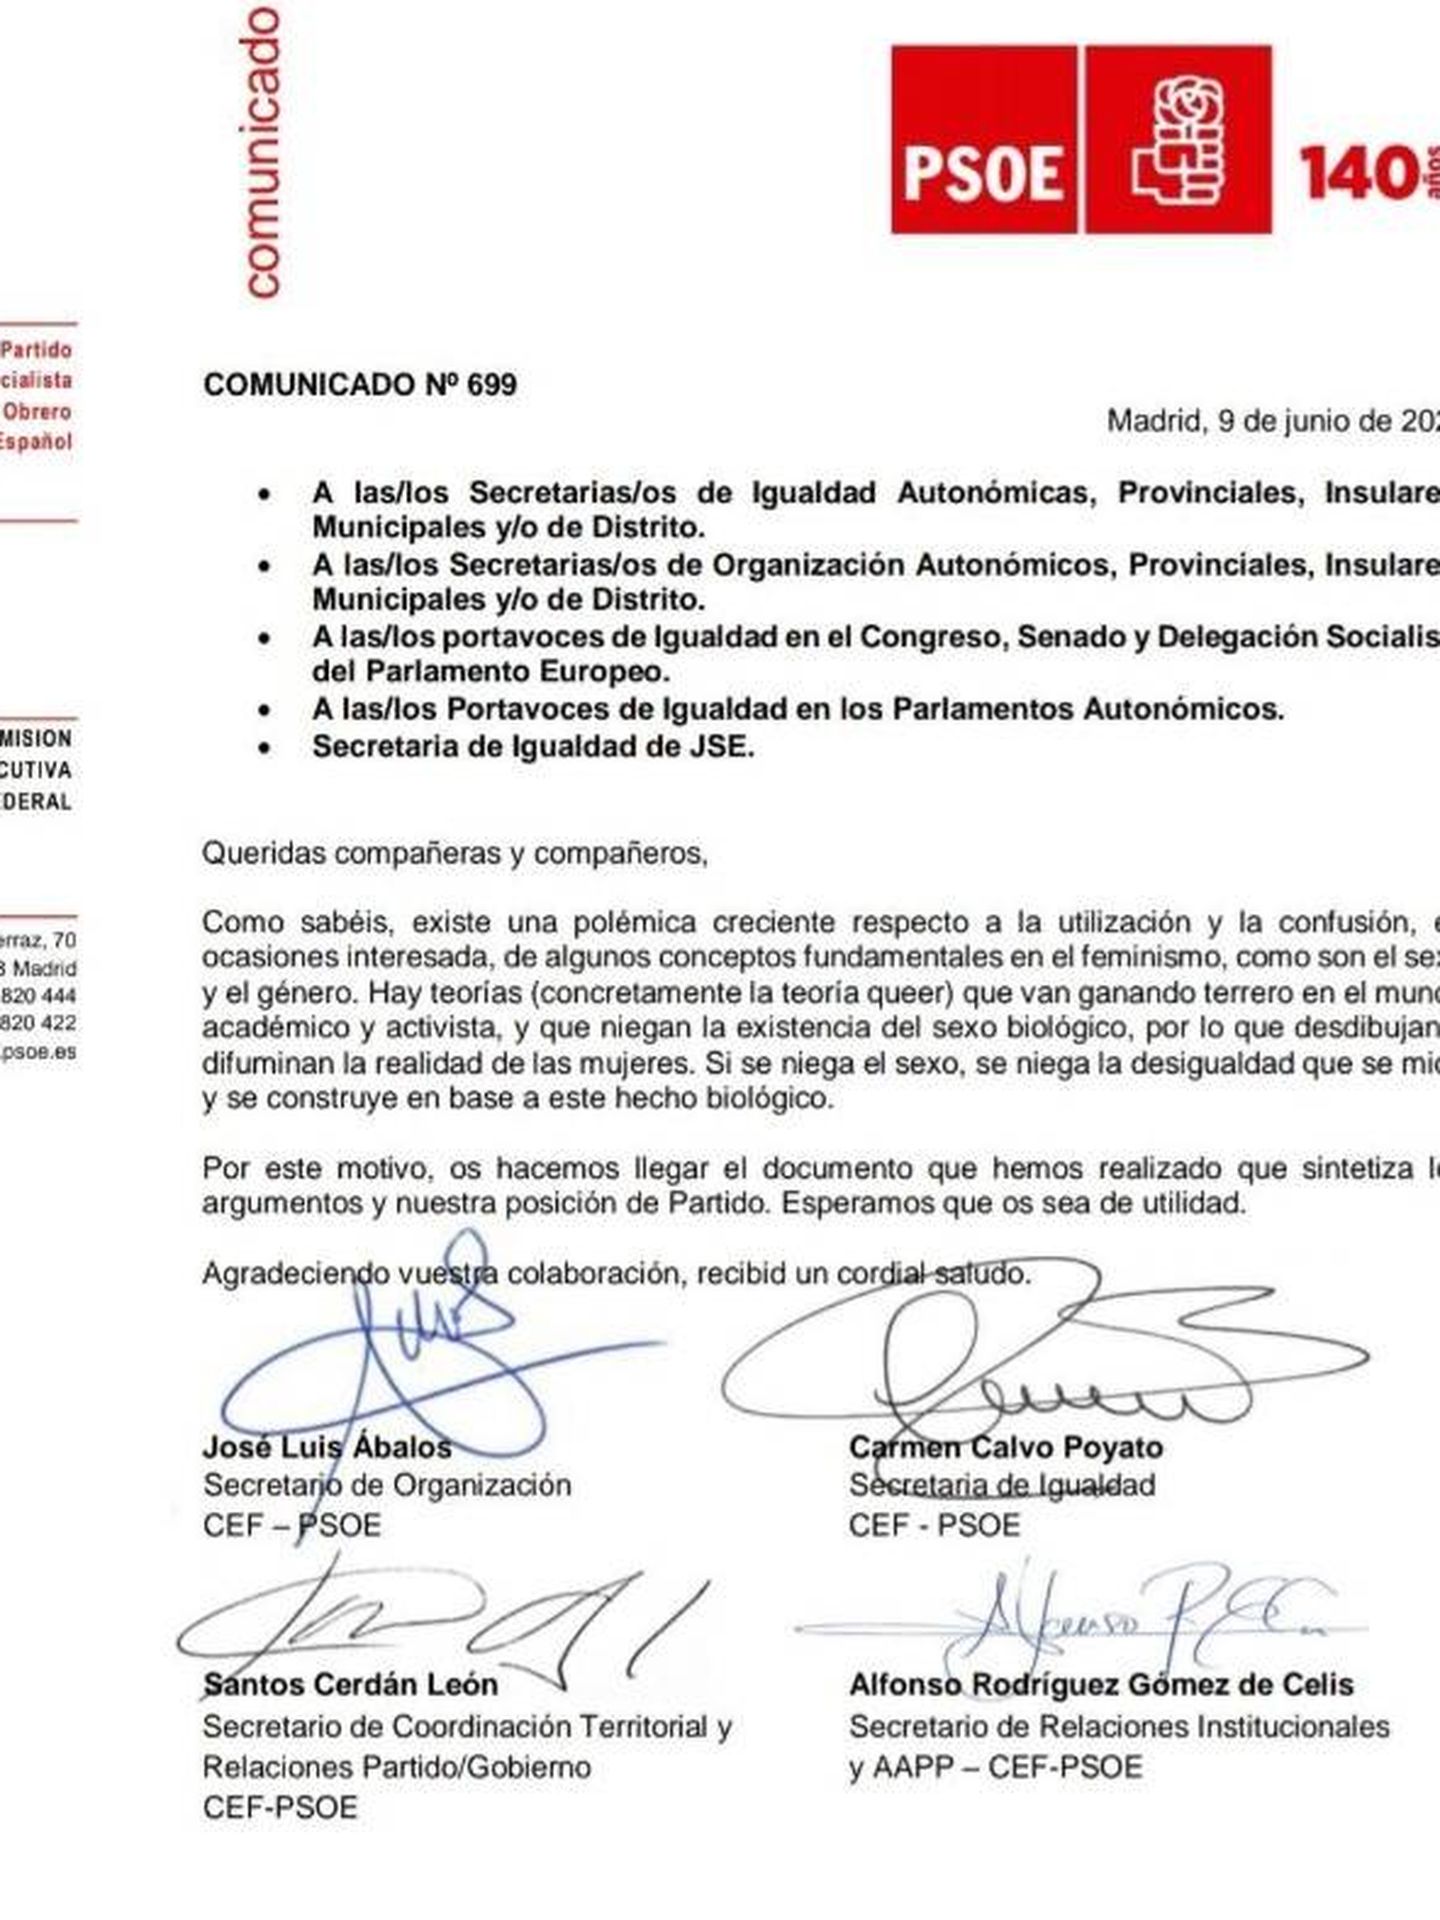 Consulte aquí en PDF el comunicado del argumentario feminista del PSOE firmado por Carmen Calvo, José Luis Ábalos, Santos Cerdán y Alfonso Rodríguez Gómez de Celis. 